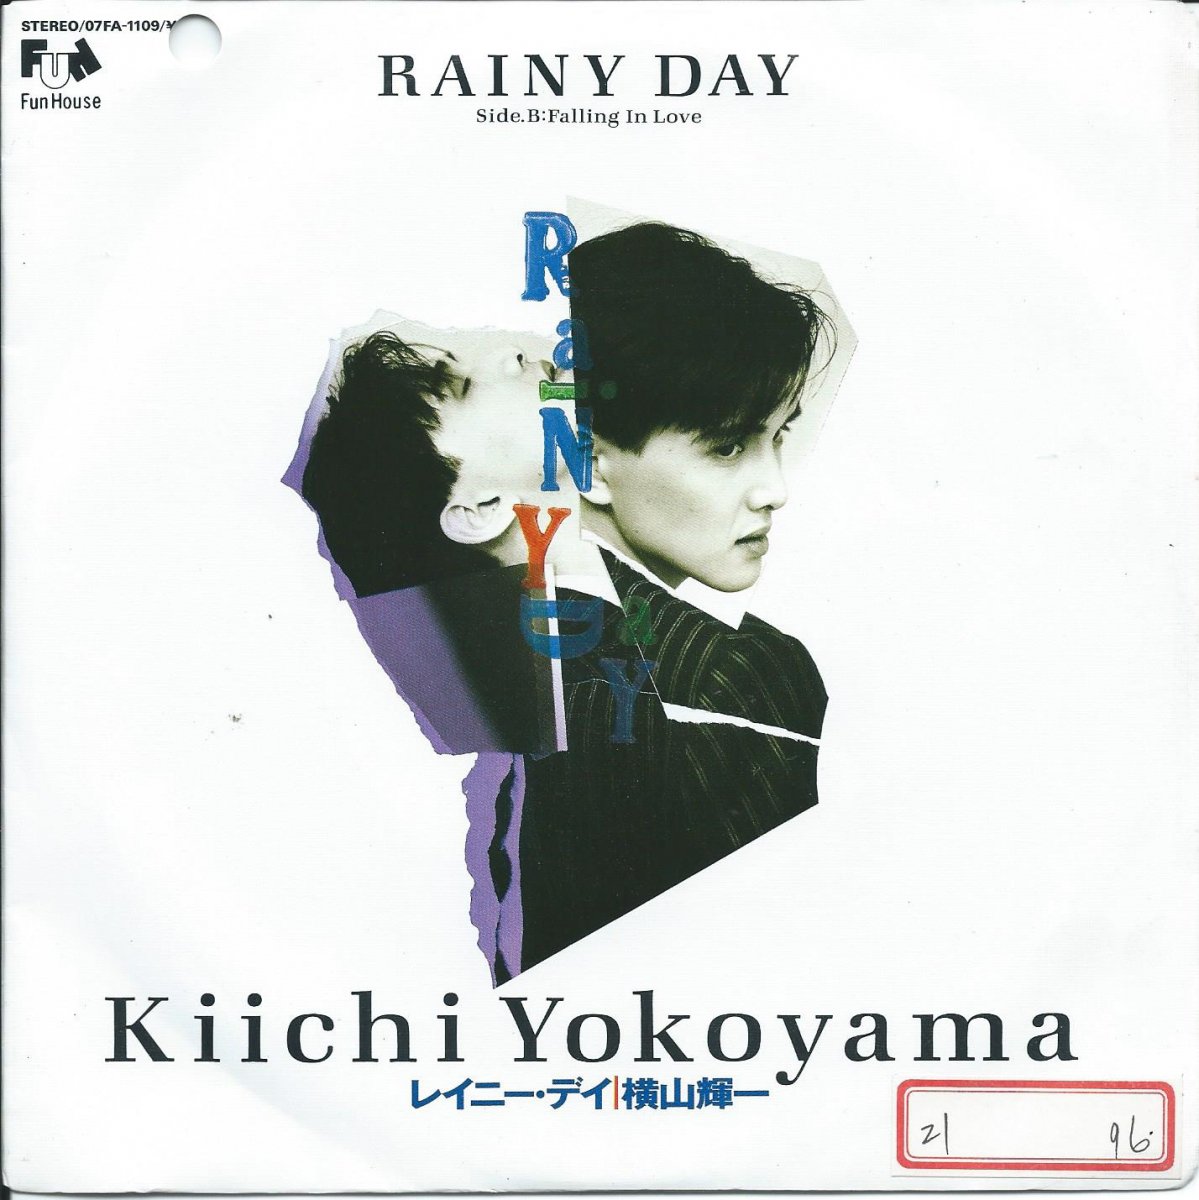 横山輝一 KIICHI YOKOYAMA / RAINY DAY / FALLING IN LOVE (7